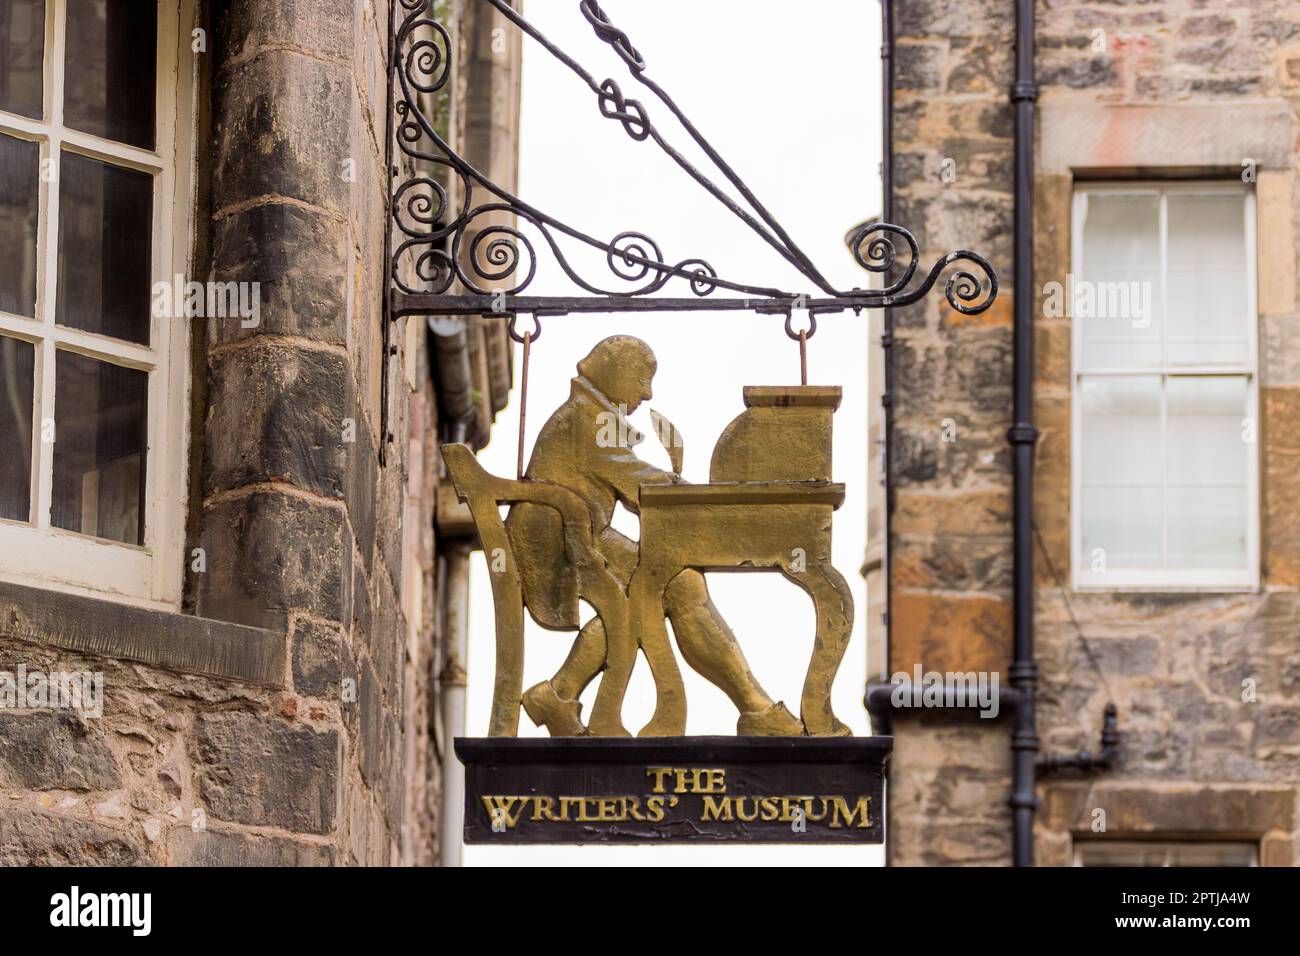 Das goldfarbene Schild hängt vor dem Writers' Museum in der Nähe der Royal Mile, Edinburgh, Lothian, Schottland, Vereinigtes Königreich, Europa Stockfoto